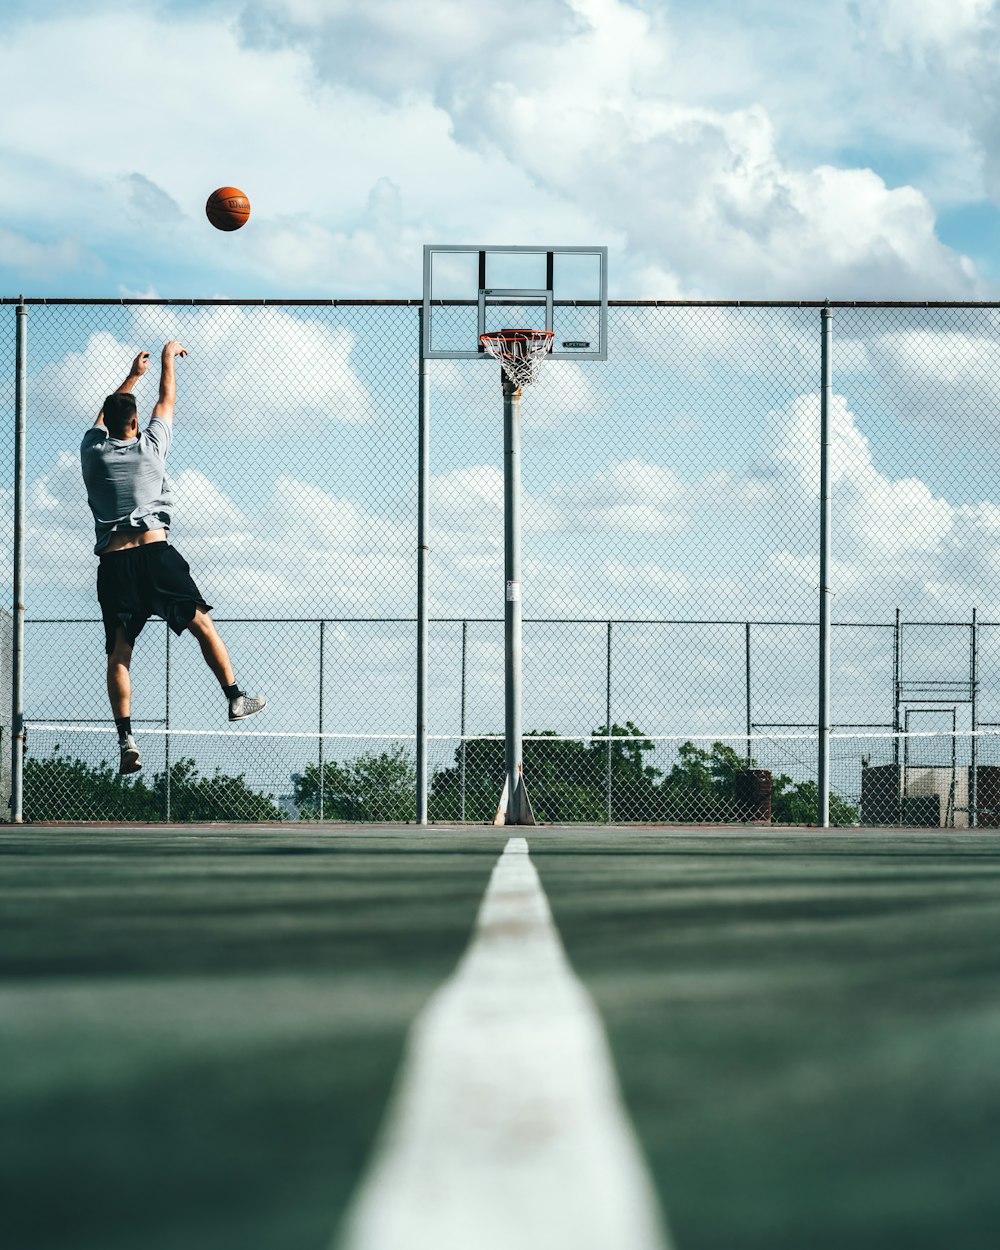 man shooting ball on basketball hoop